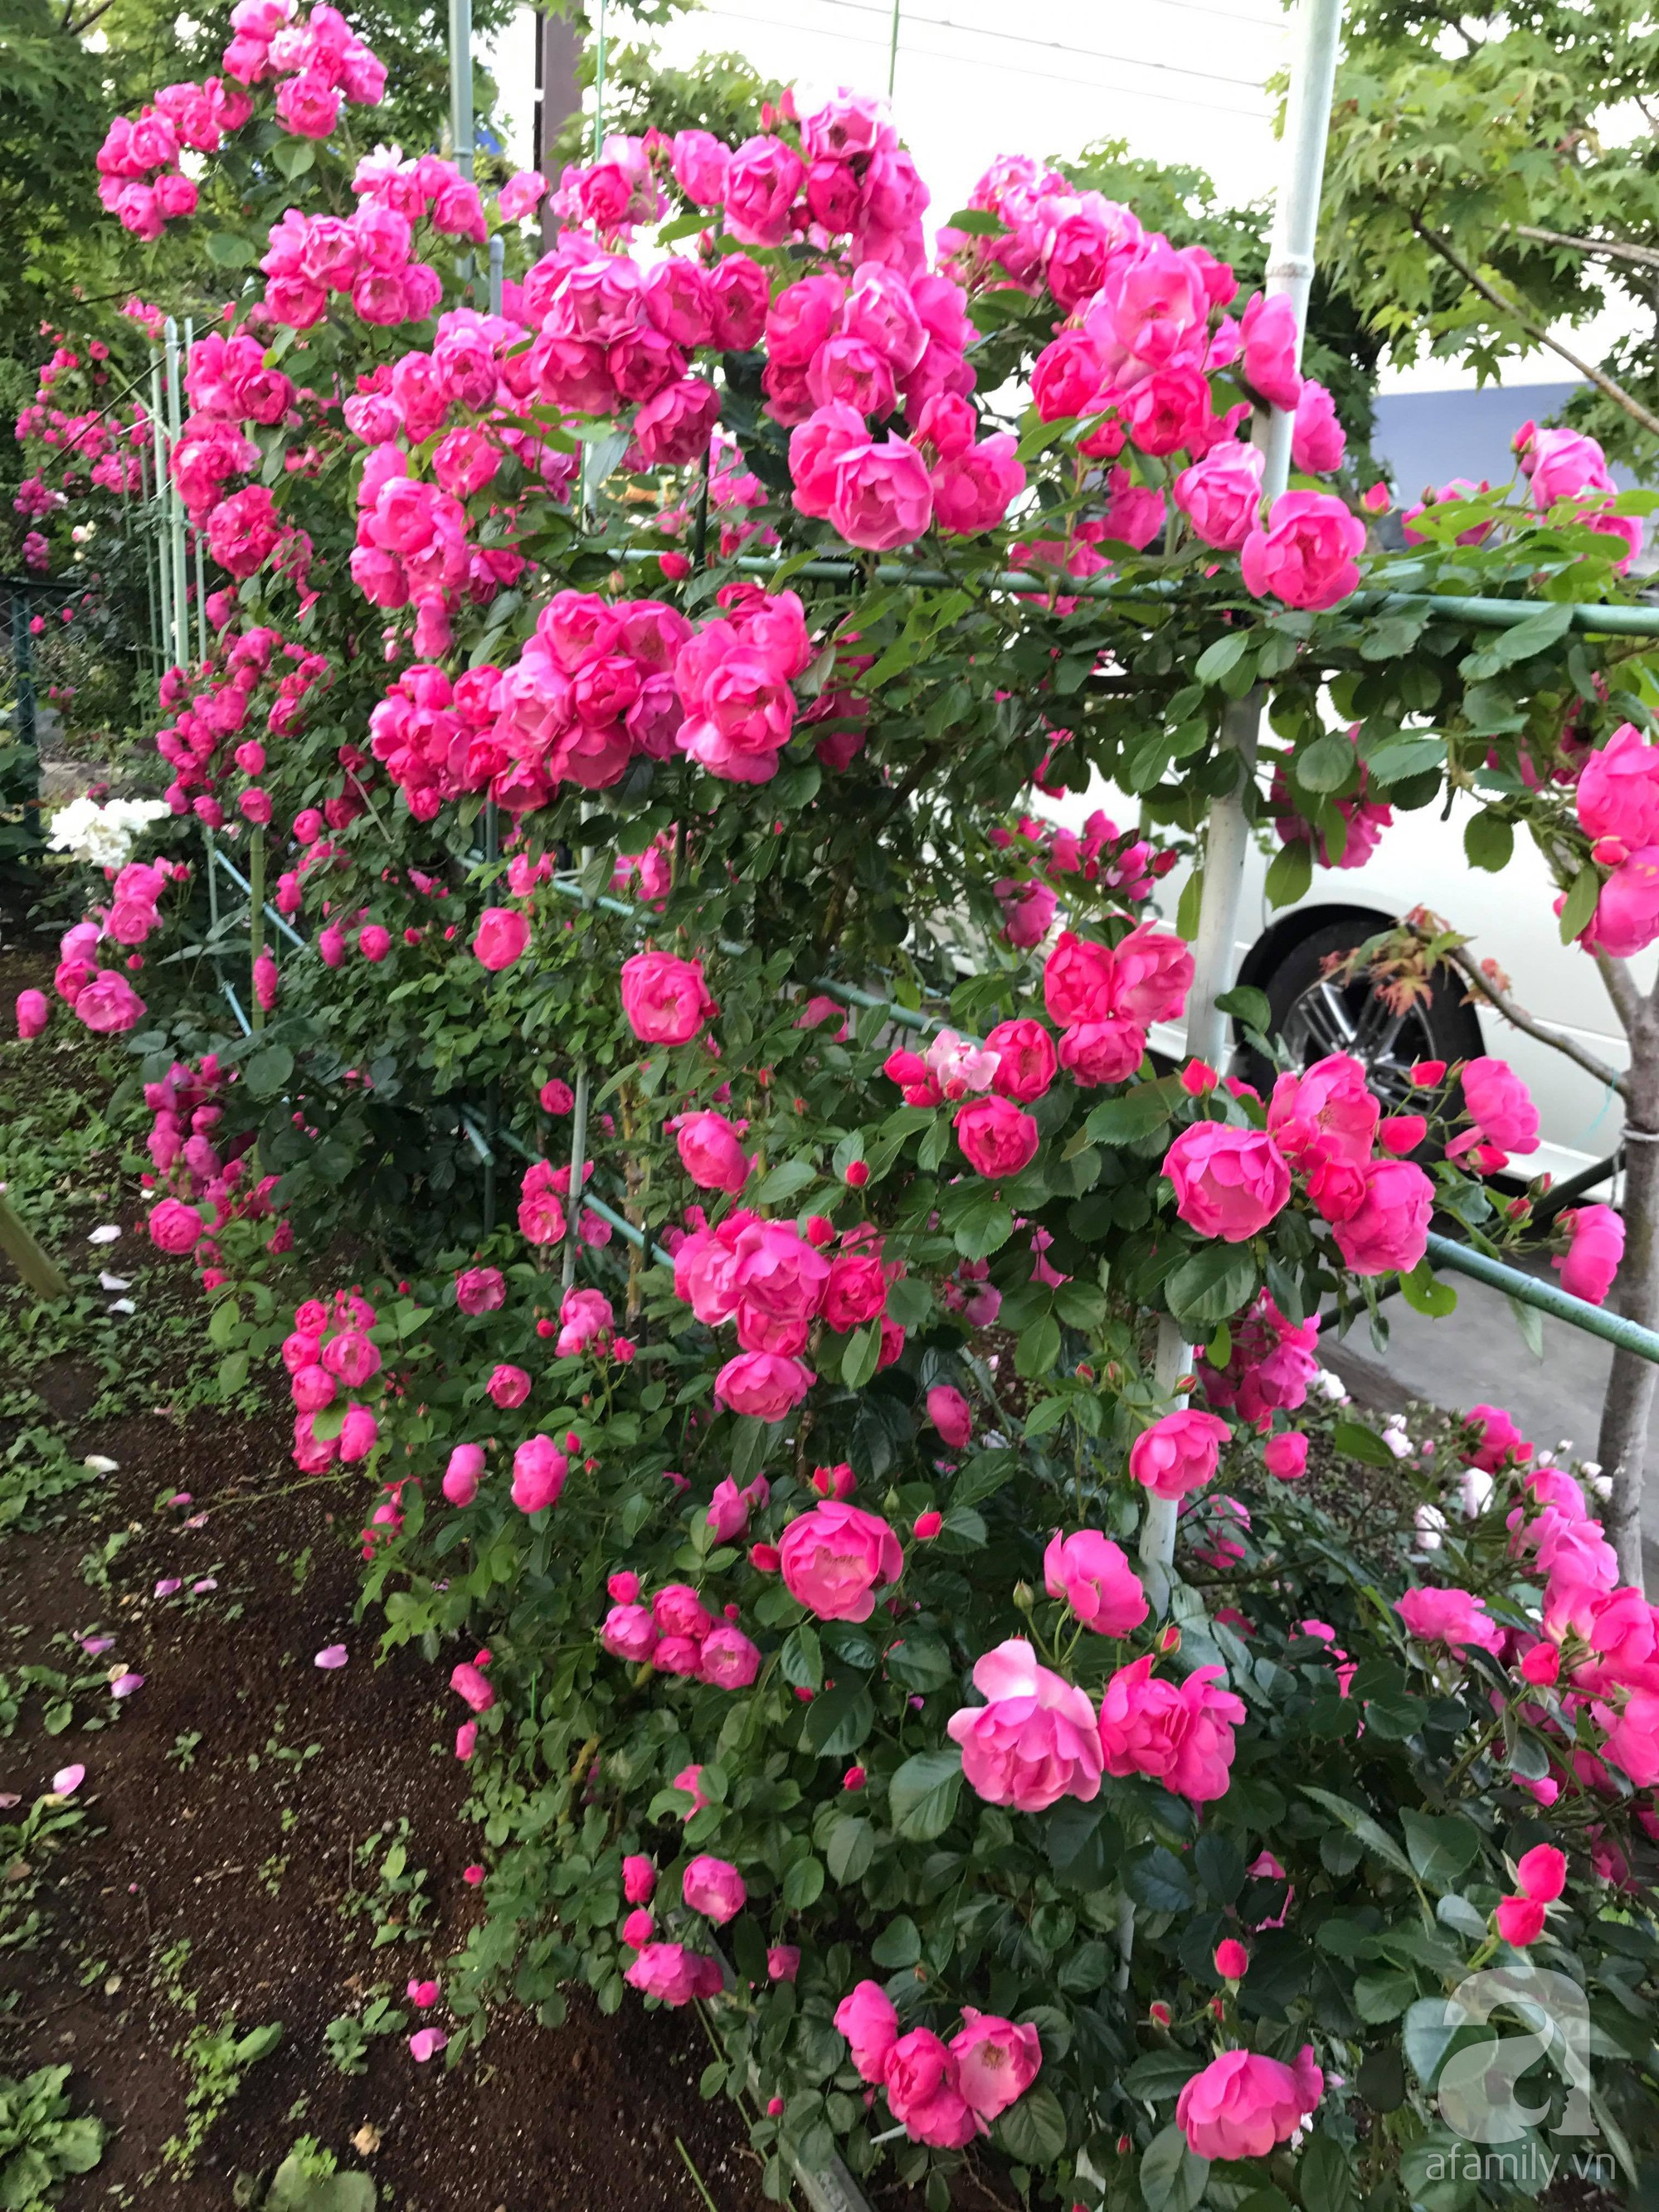 Bức tường hoa hồng đẹp như mơ trong sân vườn vỏn vẹn 6m² của người phụ nữ bỏ ra 5 năm miệt mài chăm sóc - Ảnh 8.